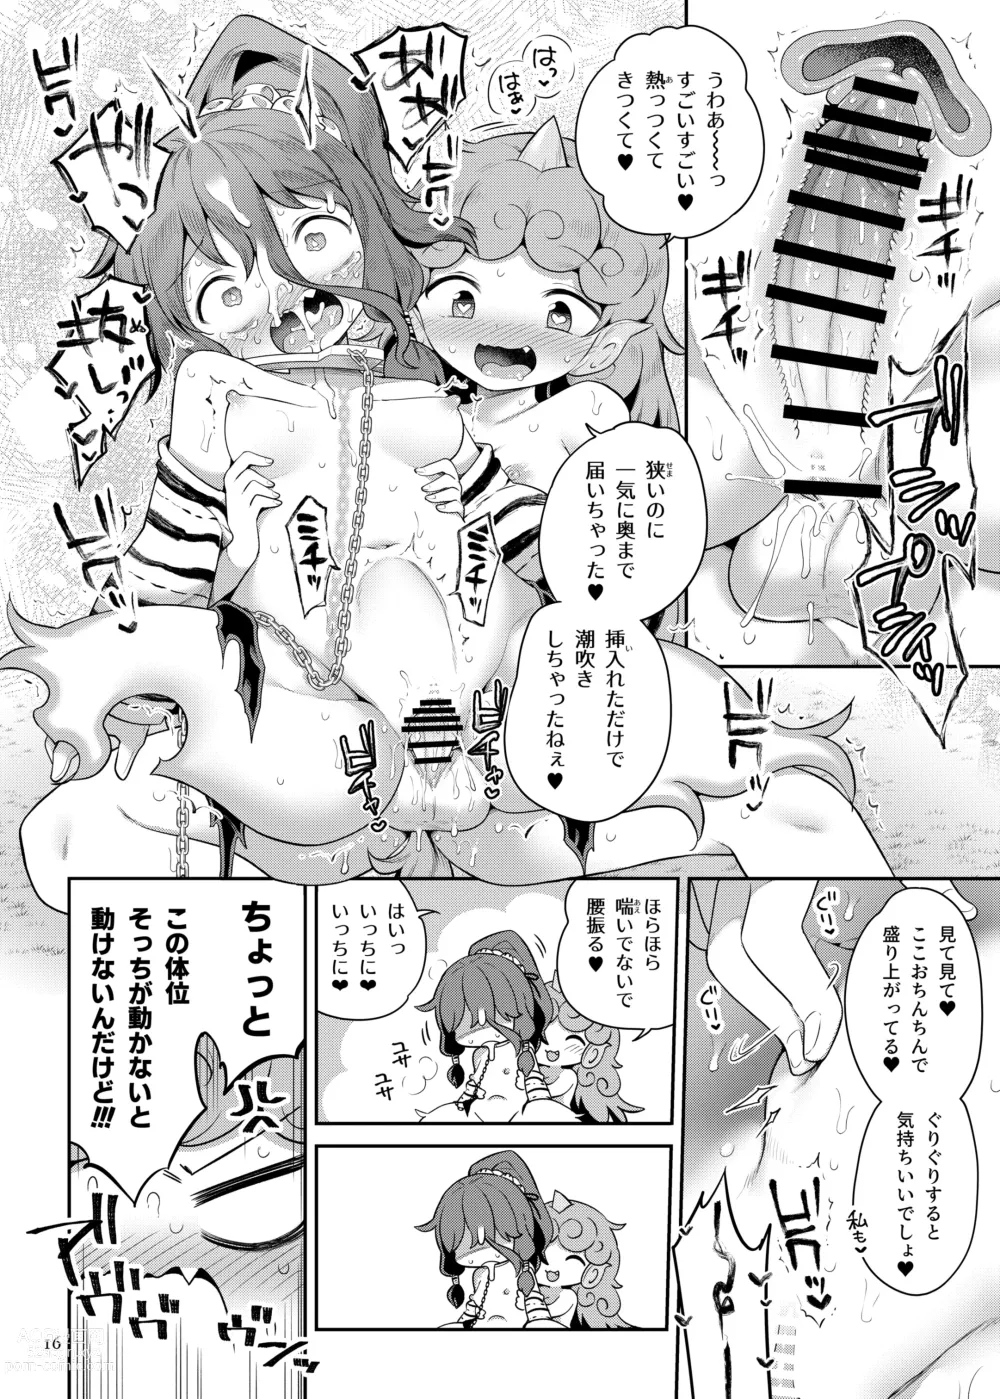 Page 16 of doujinshi Komano Aunn no Onryou Taiji